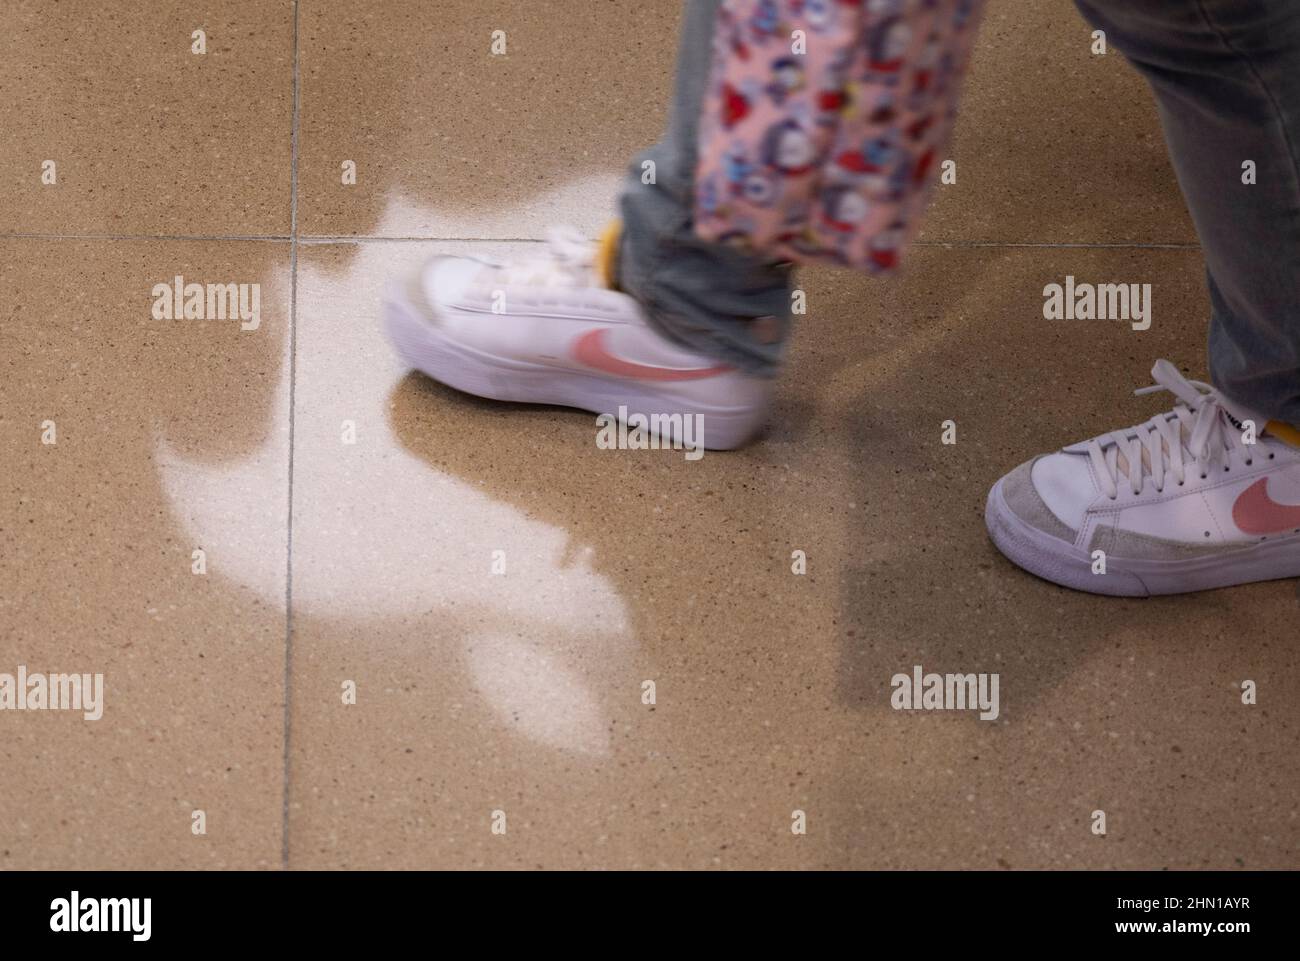 Hong Kong, China. 12th Feb, 2022. Un comprador que lleva zapatillas Nike  pasa por delante de la multinacional tecnológica estadounidense Apple Store  y el logotipo se refleja en el suelo de Hong